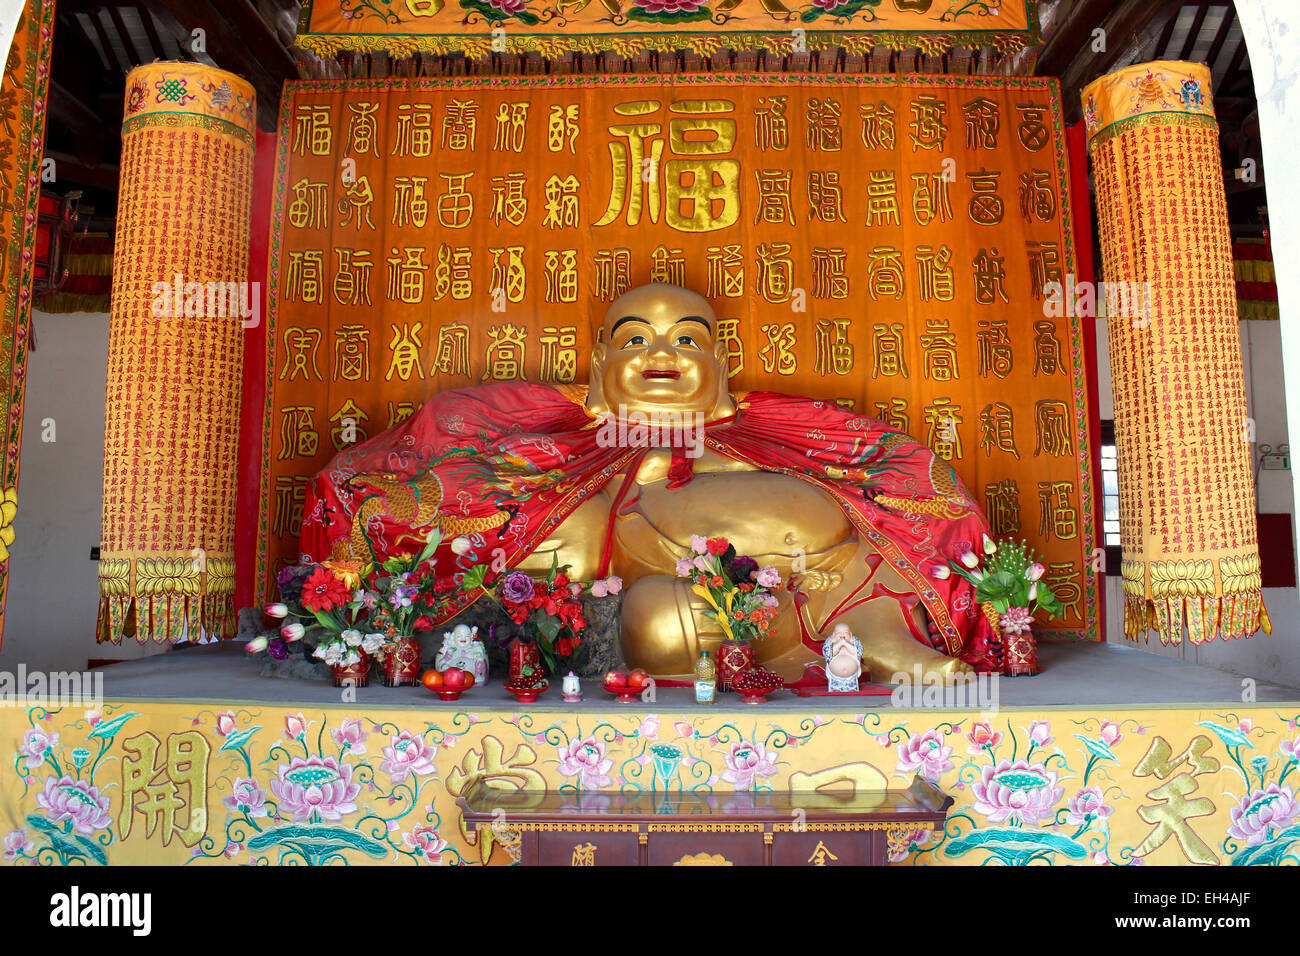 Buddha-Statue zeigt den "fat Buddha" in einem chinesischen Tempel befindet sich in einem der berühmten Wasser Städte Chinas. Stockfoto